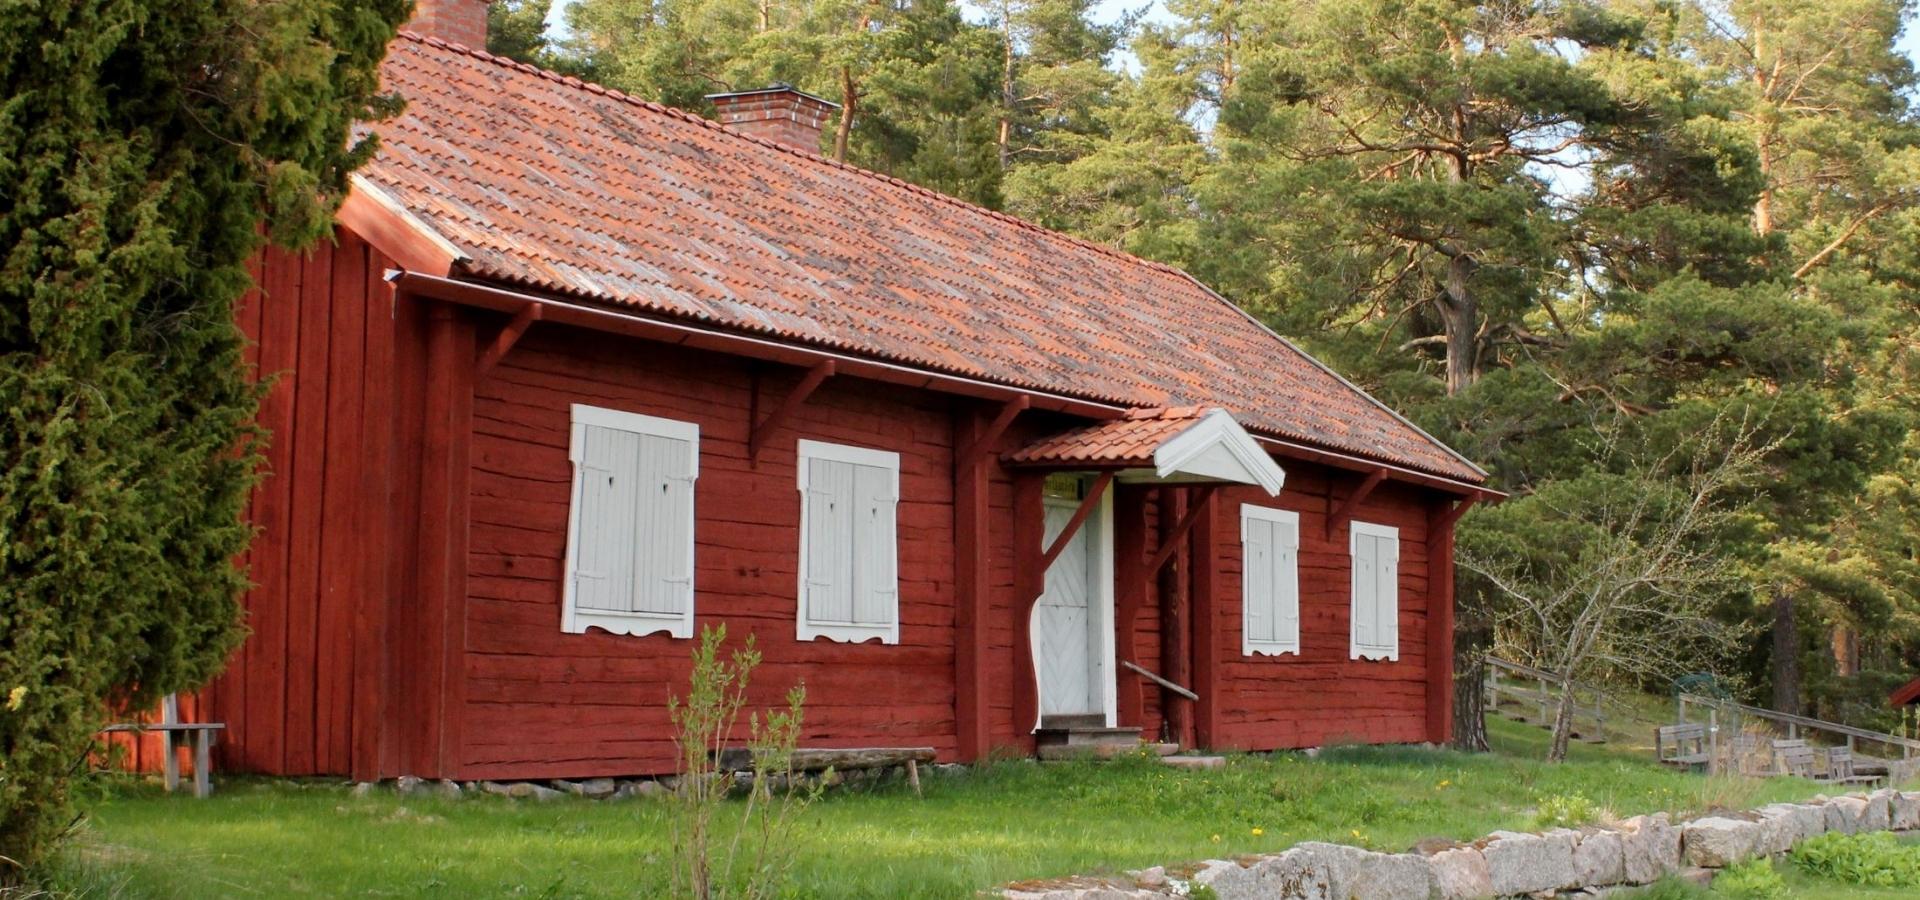 Gammelgården är föreningens första byggnad. Den kommer från Erk-Ers i Hallsbo. Innuti finns praktfulla vägg- och takmålningar.